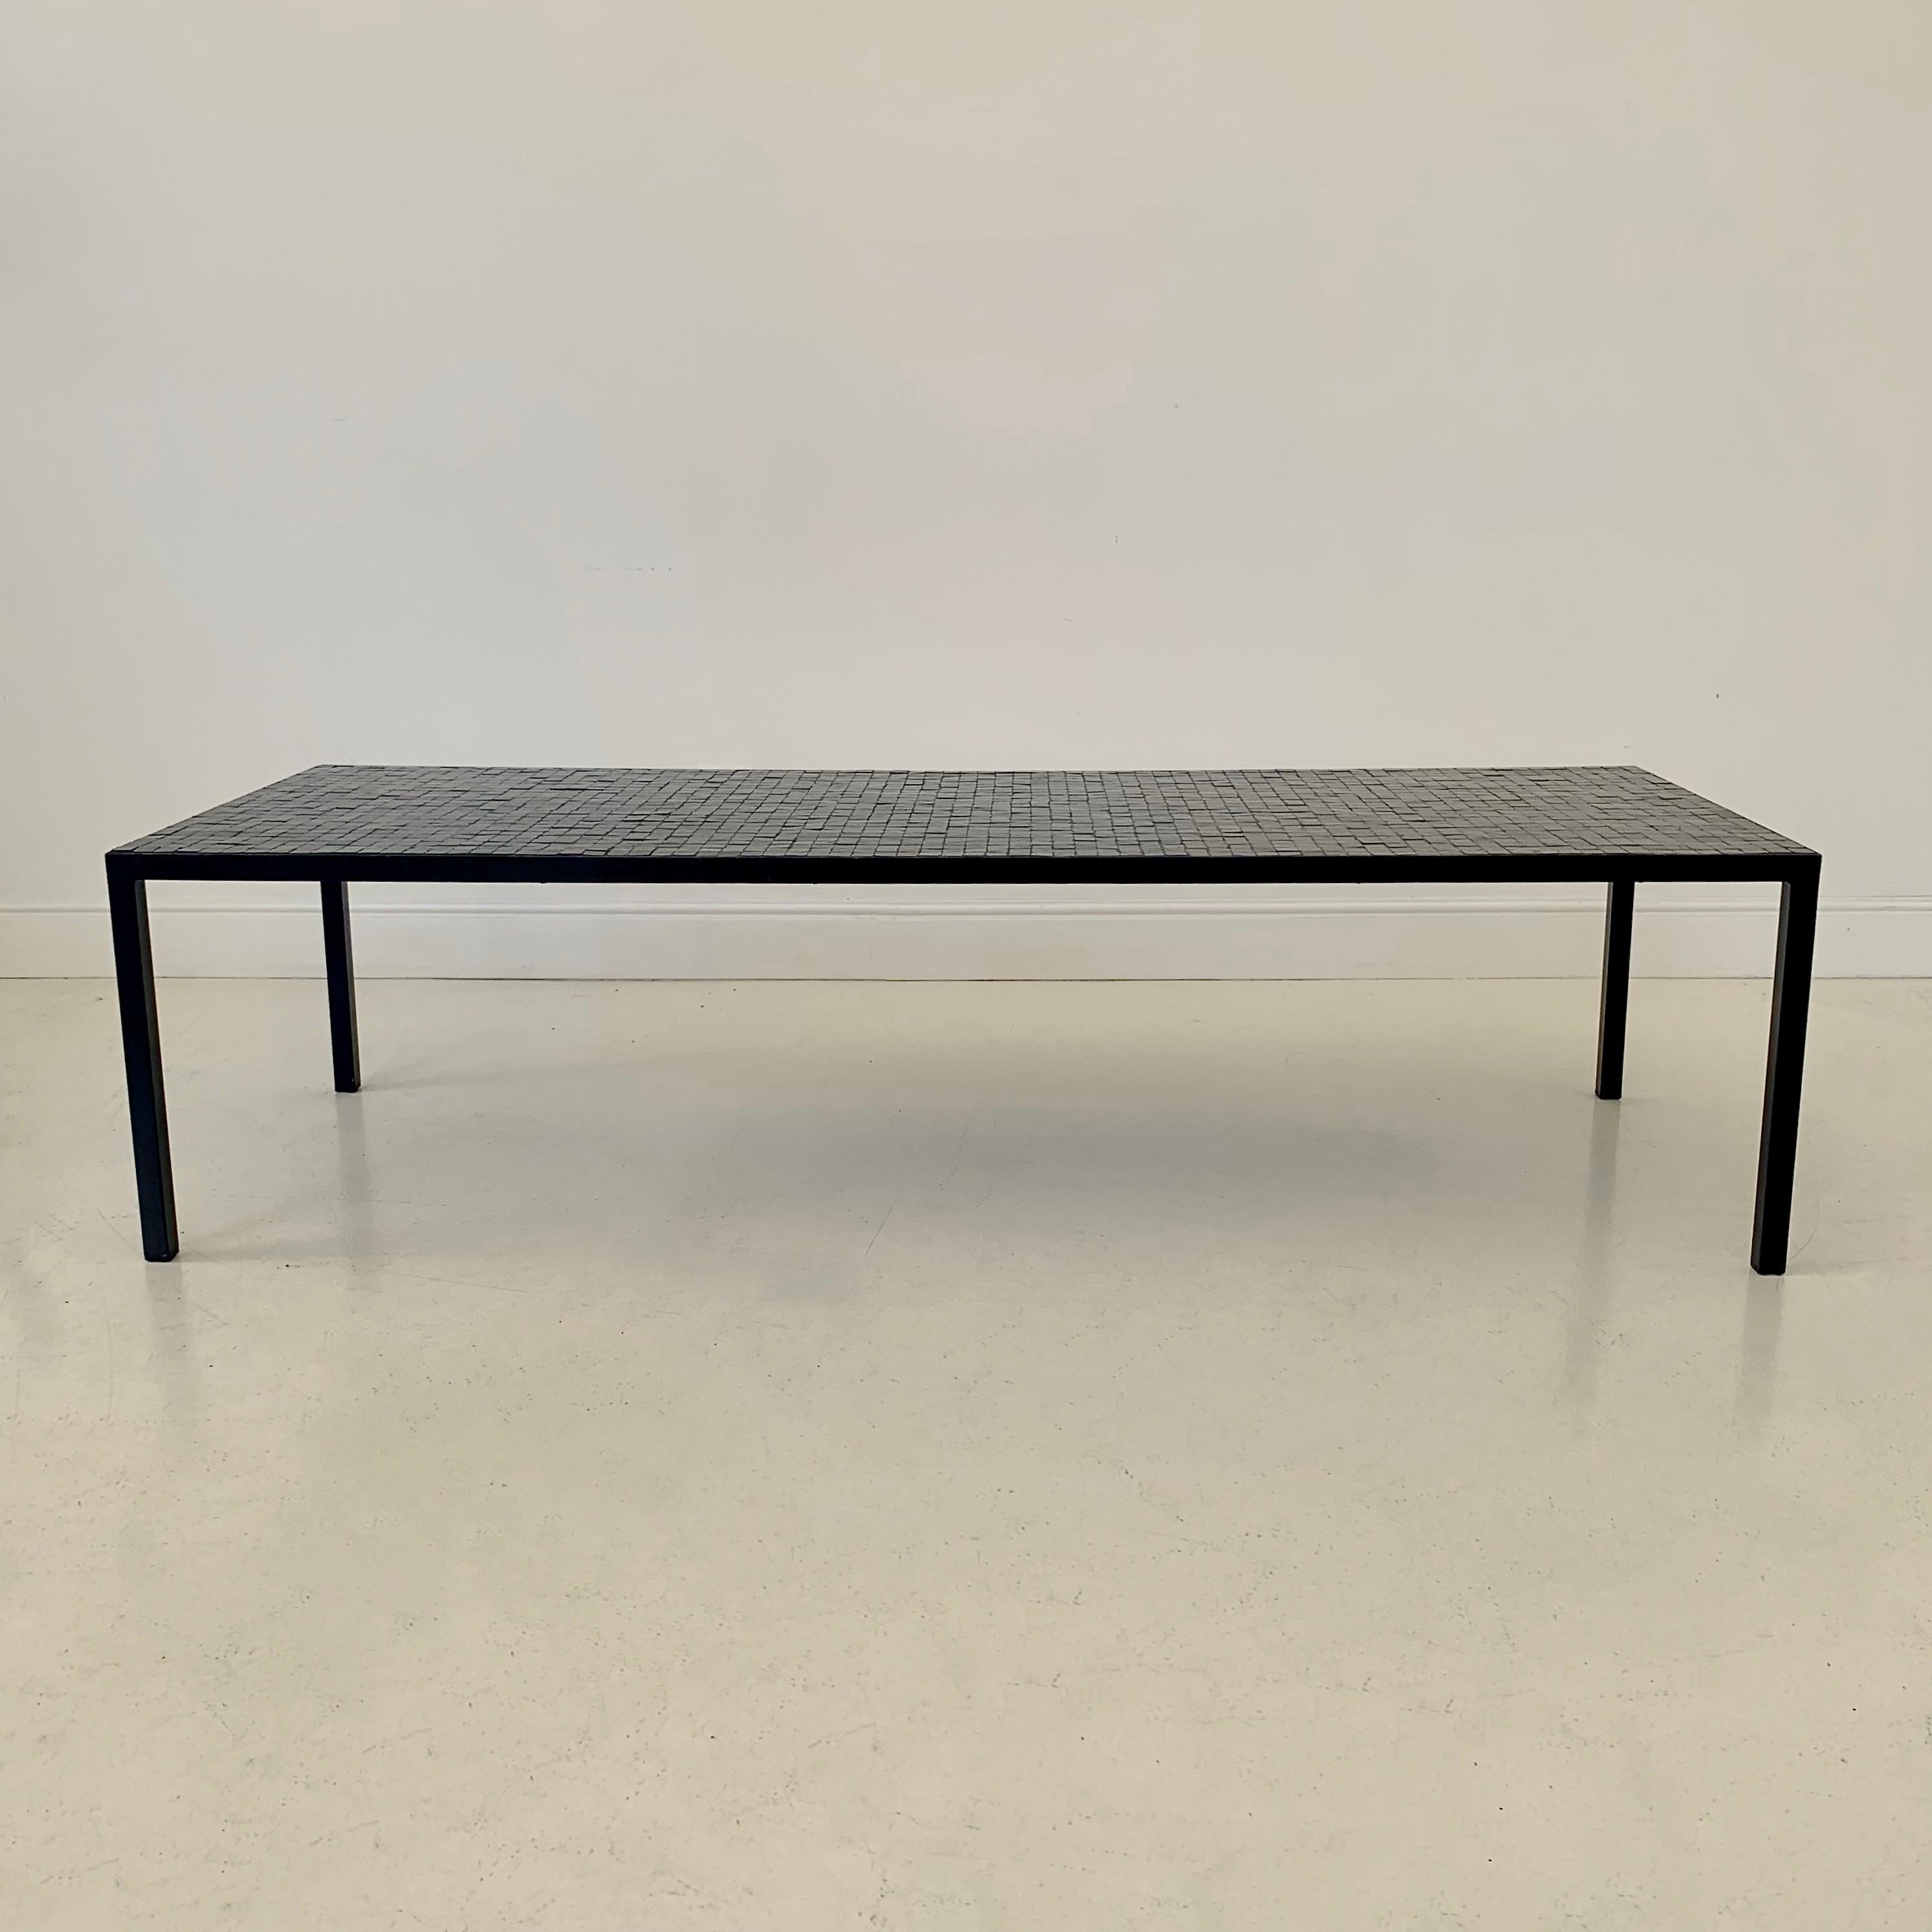 Mosaïque Table basse en mosaïque noire par Berthold Muller, vers 1960, Allemagne.